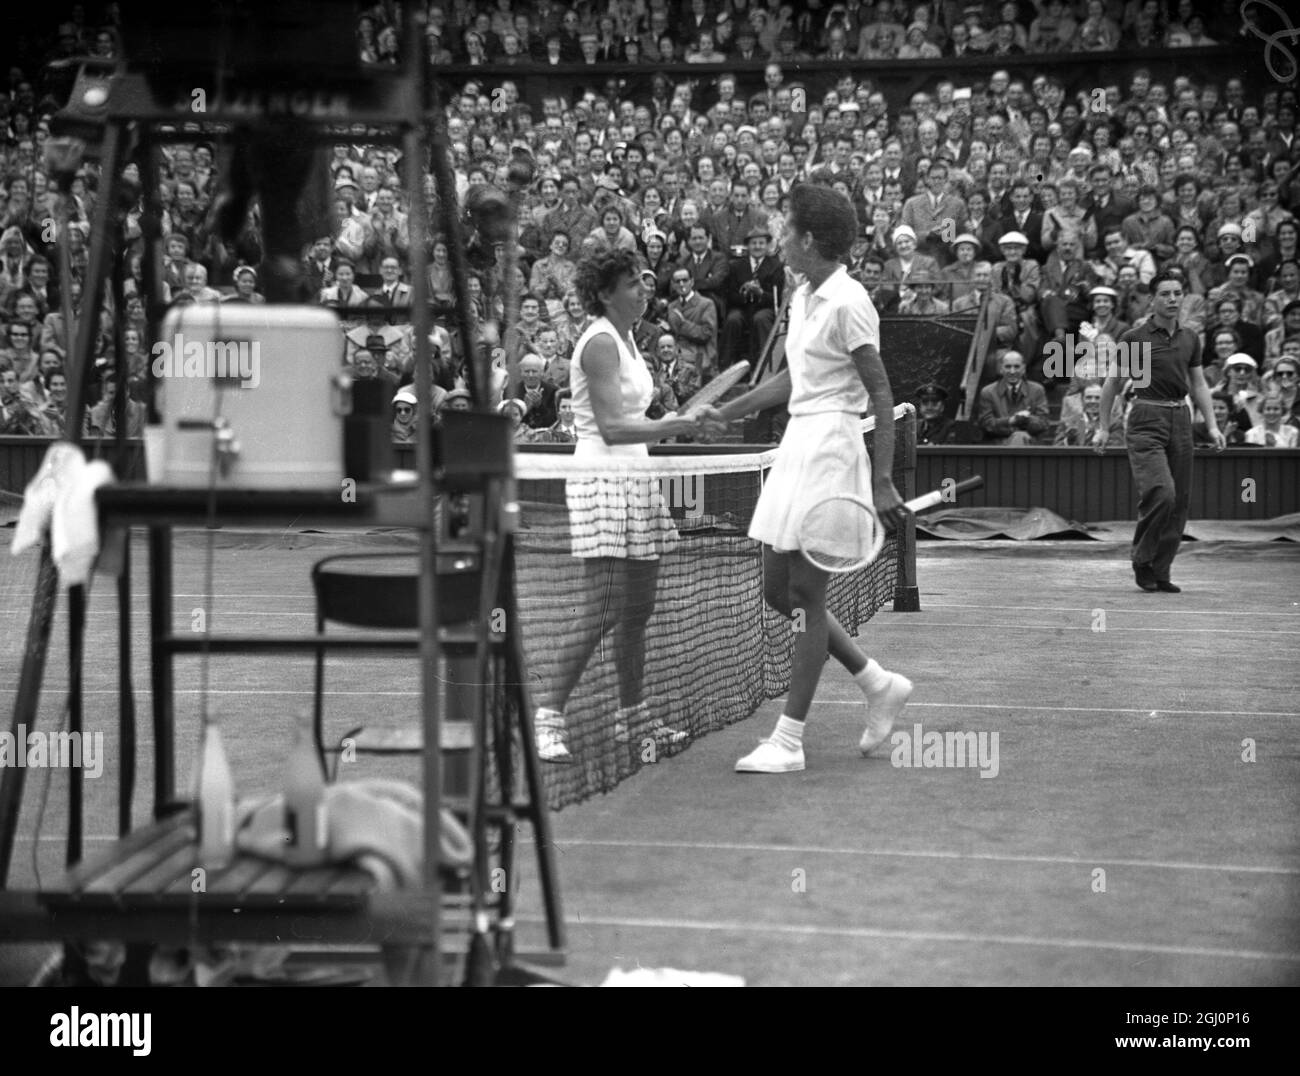 Die amerikanische Tennisspielerin, Althea Gibson, schüttelt sich nach ihrem Viertelfinalspiel im Einzel bei der Wimbledon Lawn Tennis Championship in London die Hände mit ihrer Landsfrau, Miss Shirley Fry. Miss Fry hat das Spiel gewonnen : 4 - 6 , 6 - 3 , 6 - 4 . Juli 1956 Stockfoto